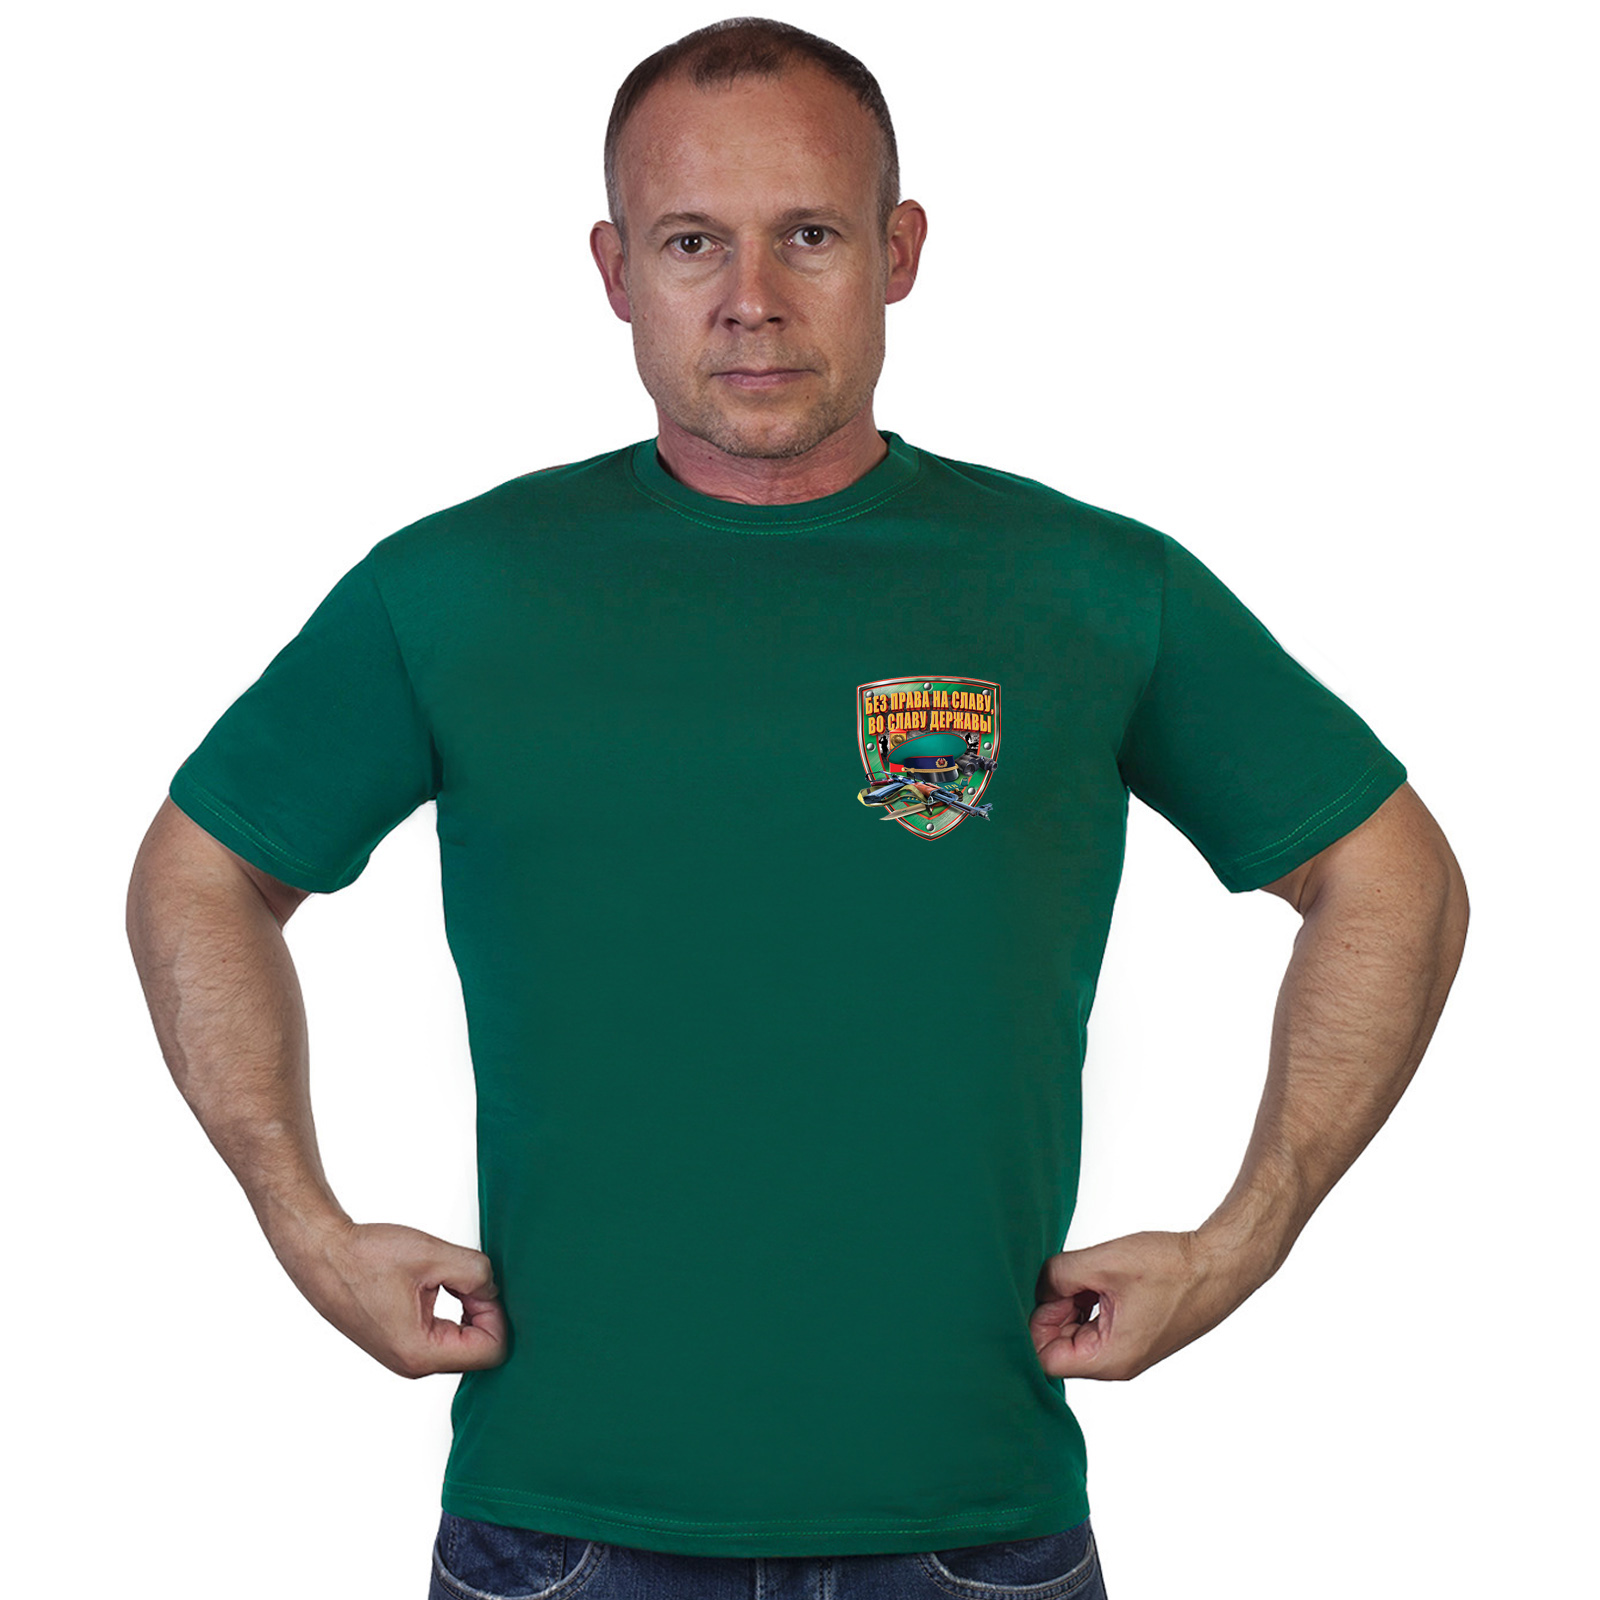 Мужская зеленая футболка с символикой пограничников 